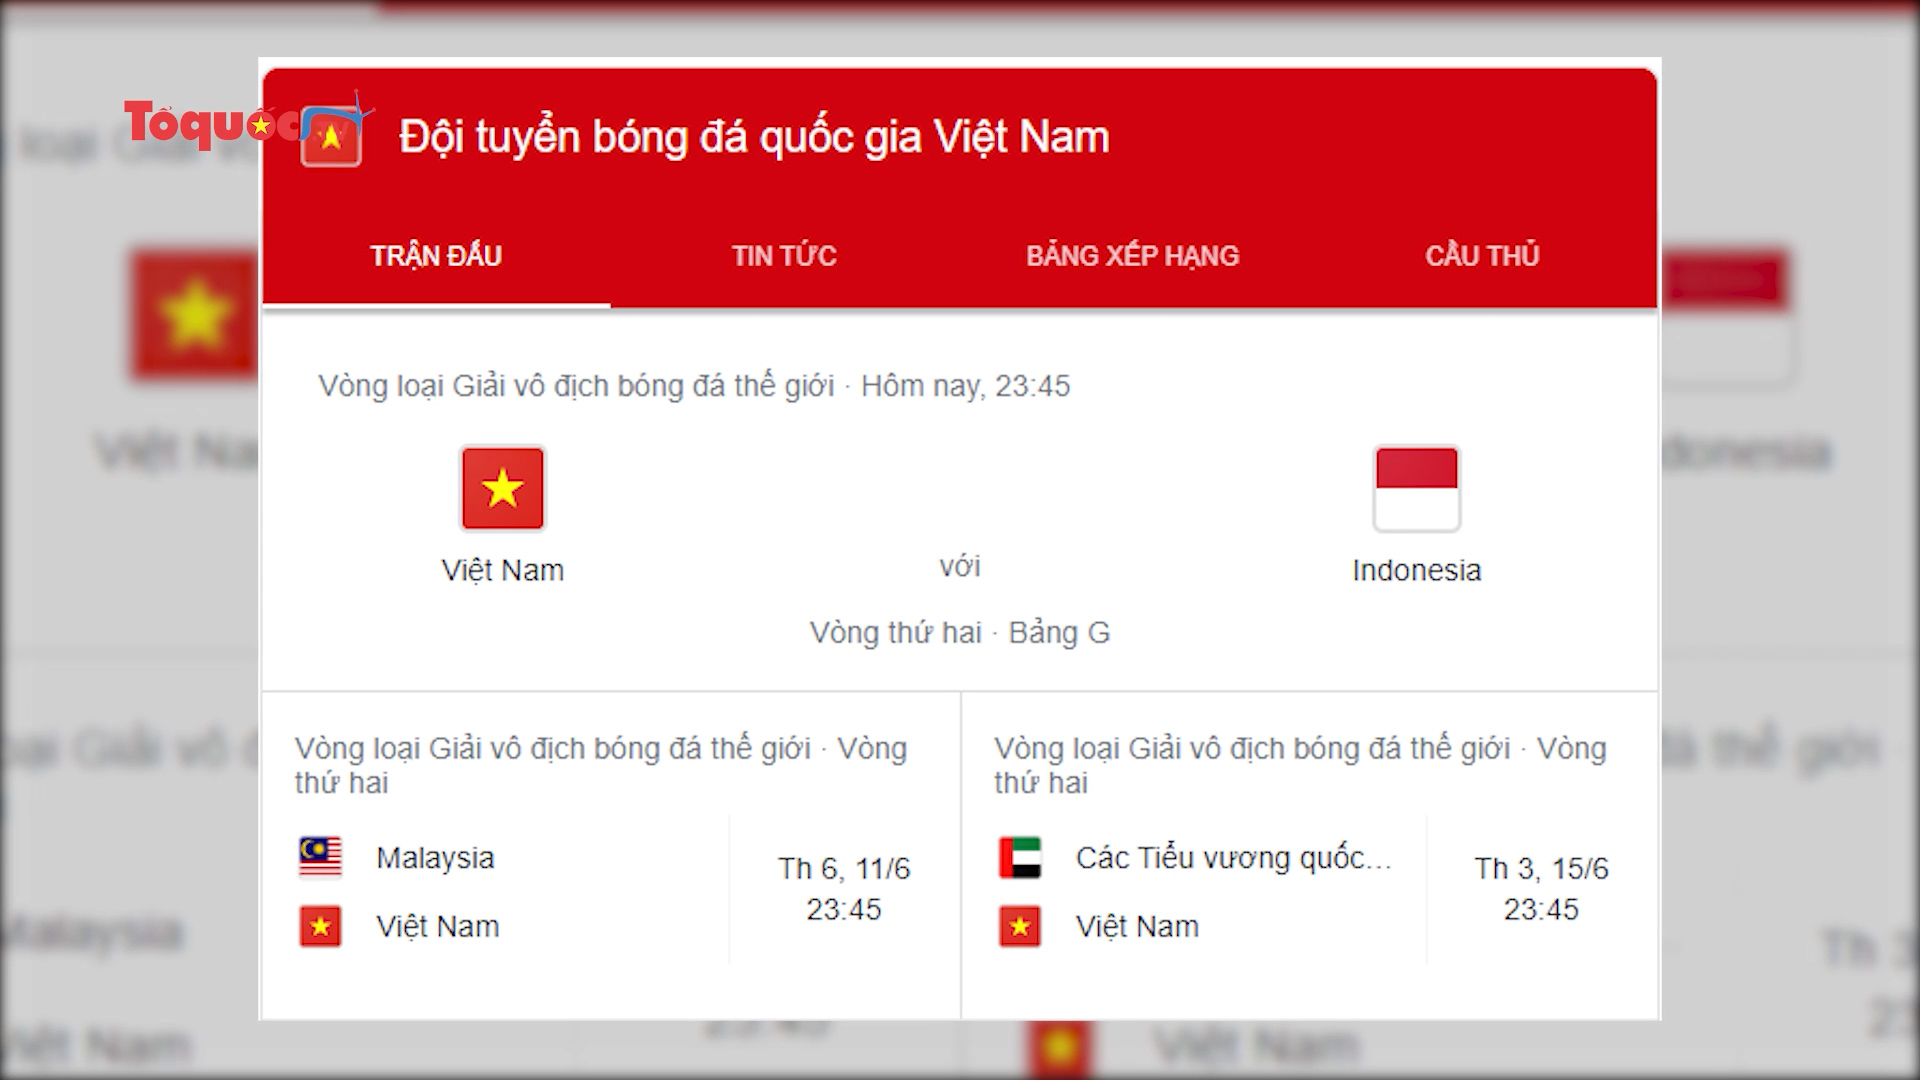 Lịch truyền hình của đội tuyển Việt Nam tại vòng loại World Cup 2022